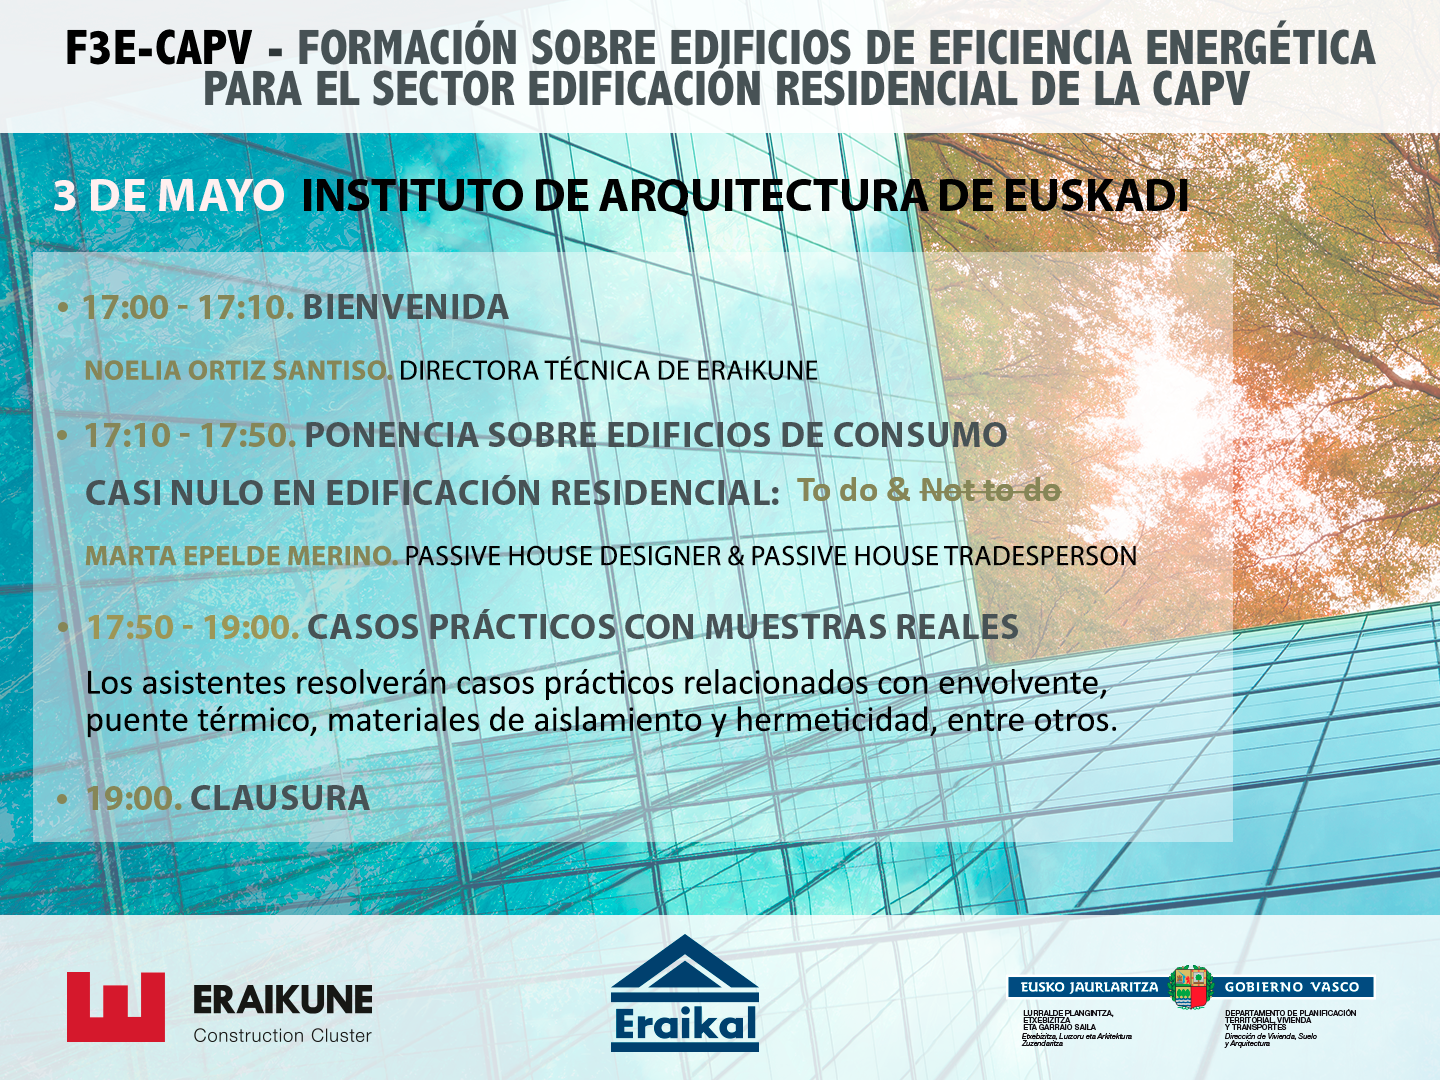 F3E-CAPV: Formación sobre edificios de eficiencia energética para el sector edificación residencial en Euskadi (3 mayo) @ Instituto de Arquitectura de Euskadi de Donostia-San Sebastián